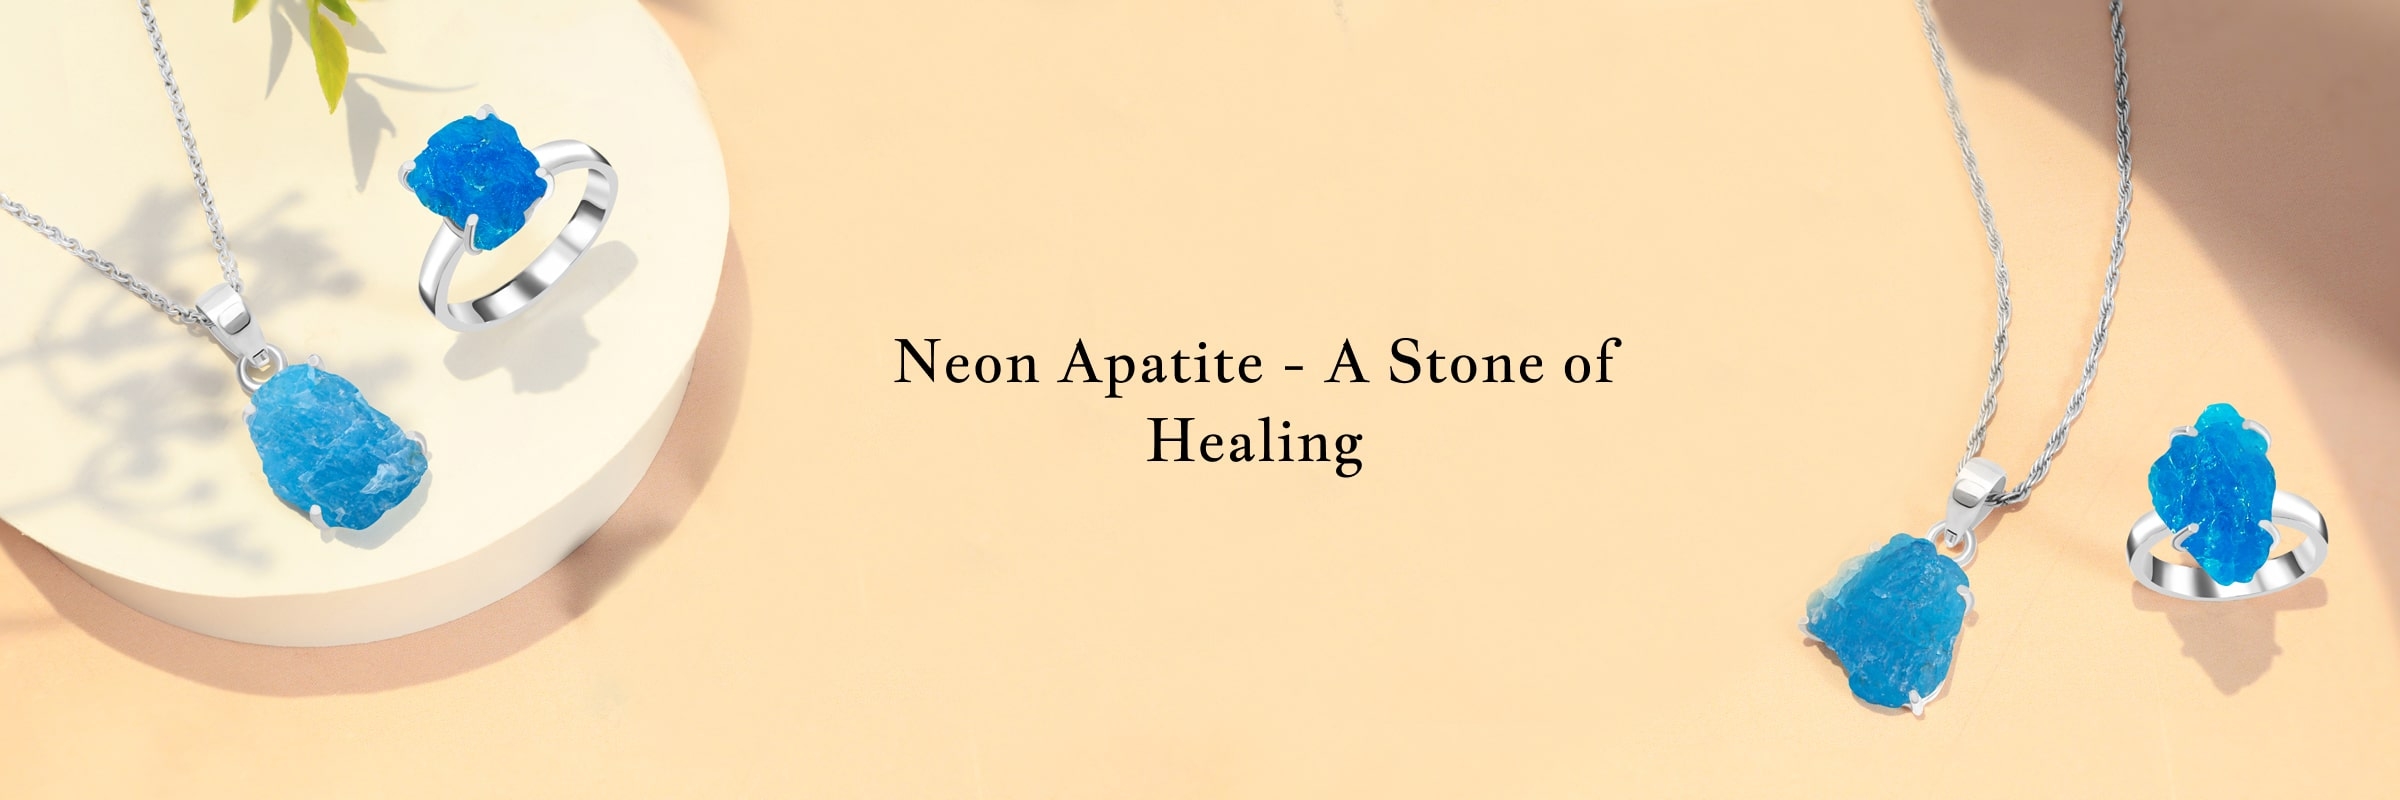 Healing Properties of Neon Apatite Stone